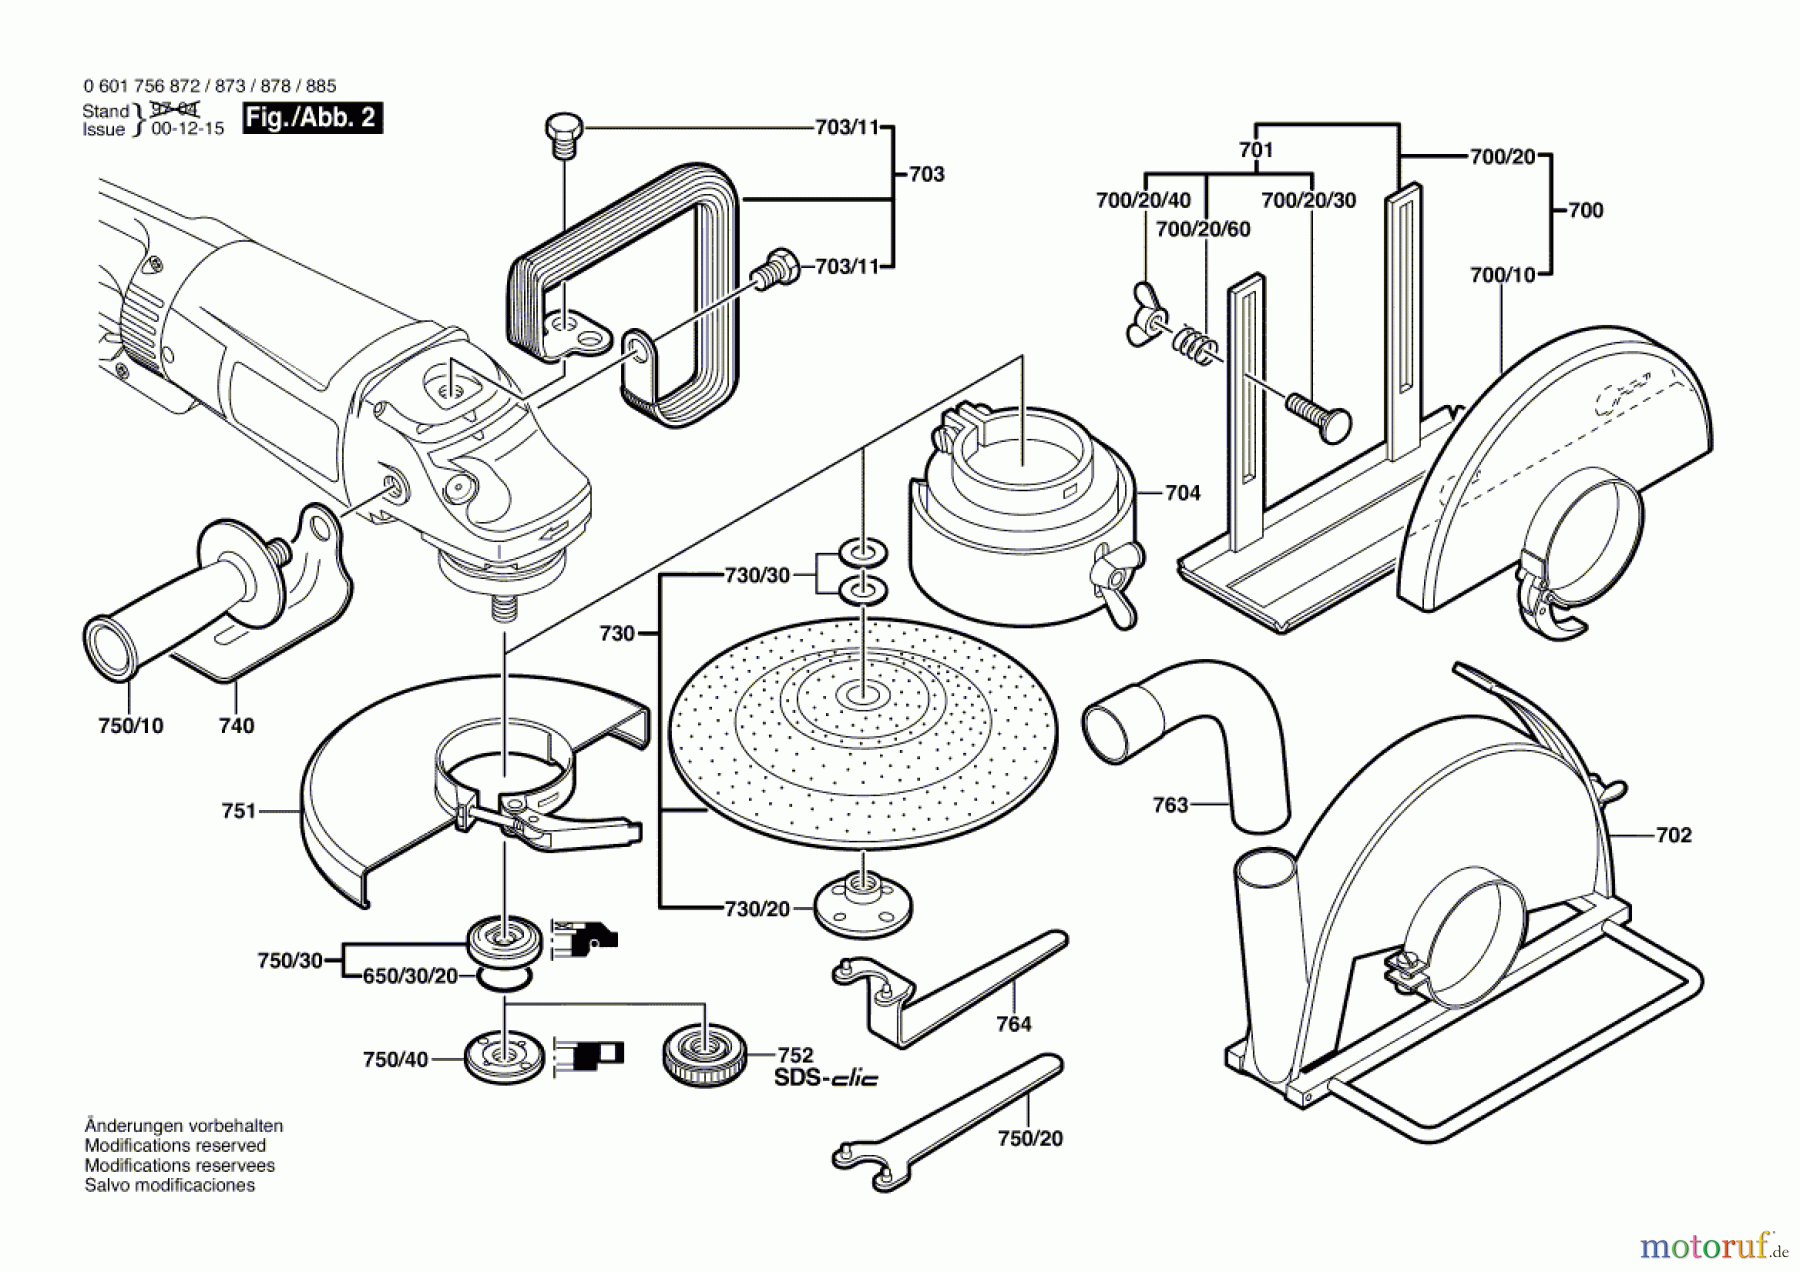  Bosch Werkzeug Winkelschleifer GWS 25-230 J Seite 2